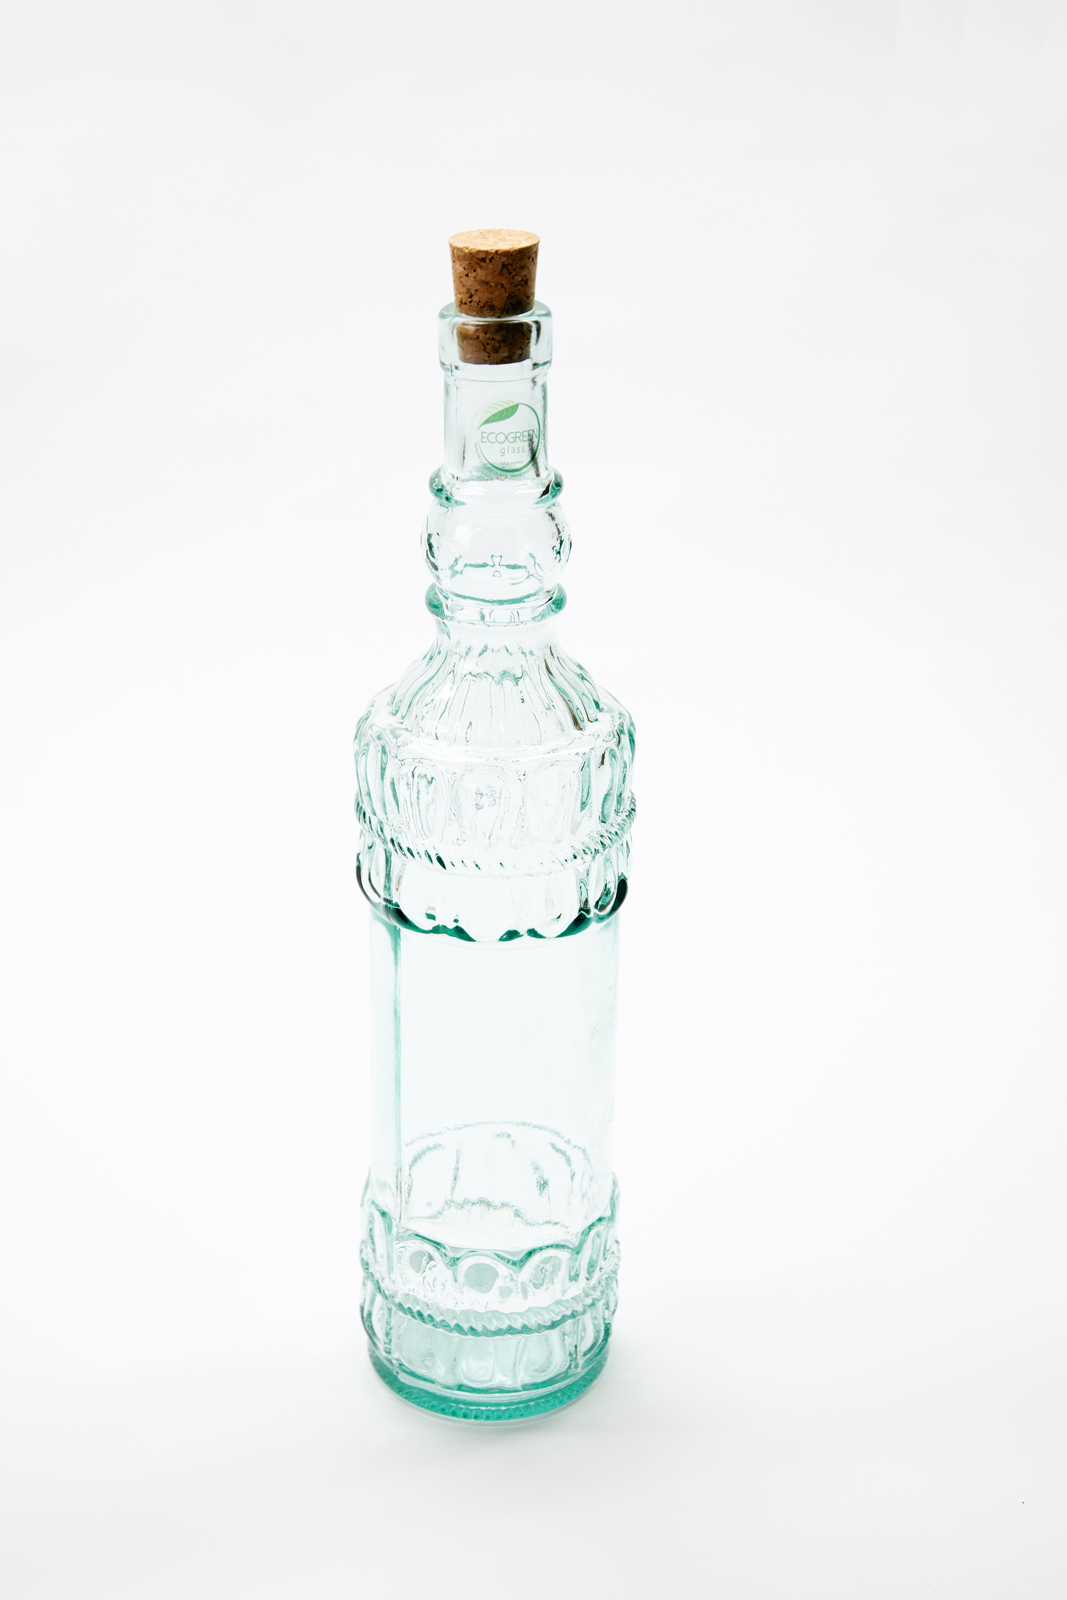 Ecogreen Flasche 700ml mit Kork Verschluss Decor